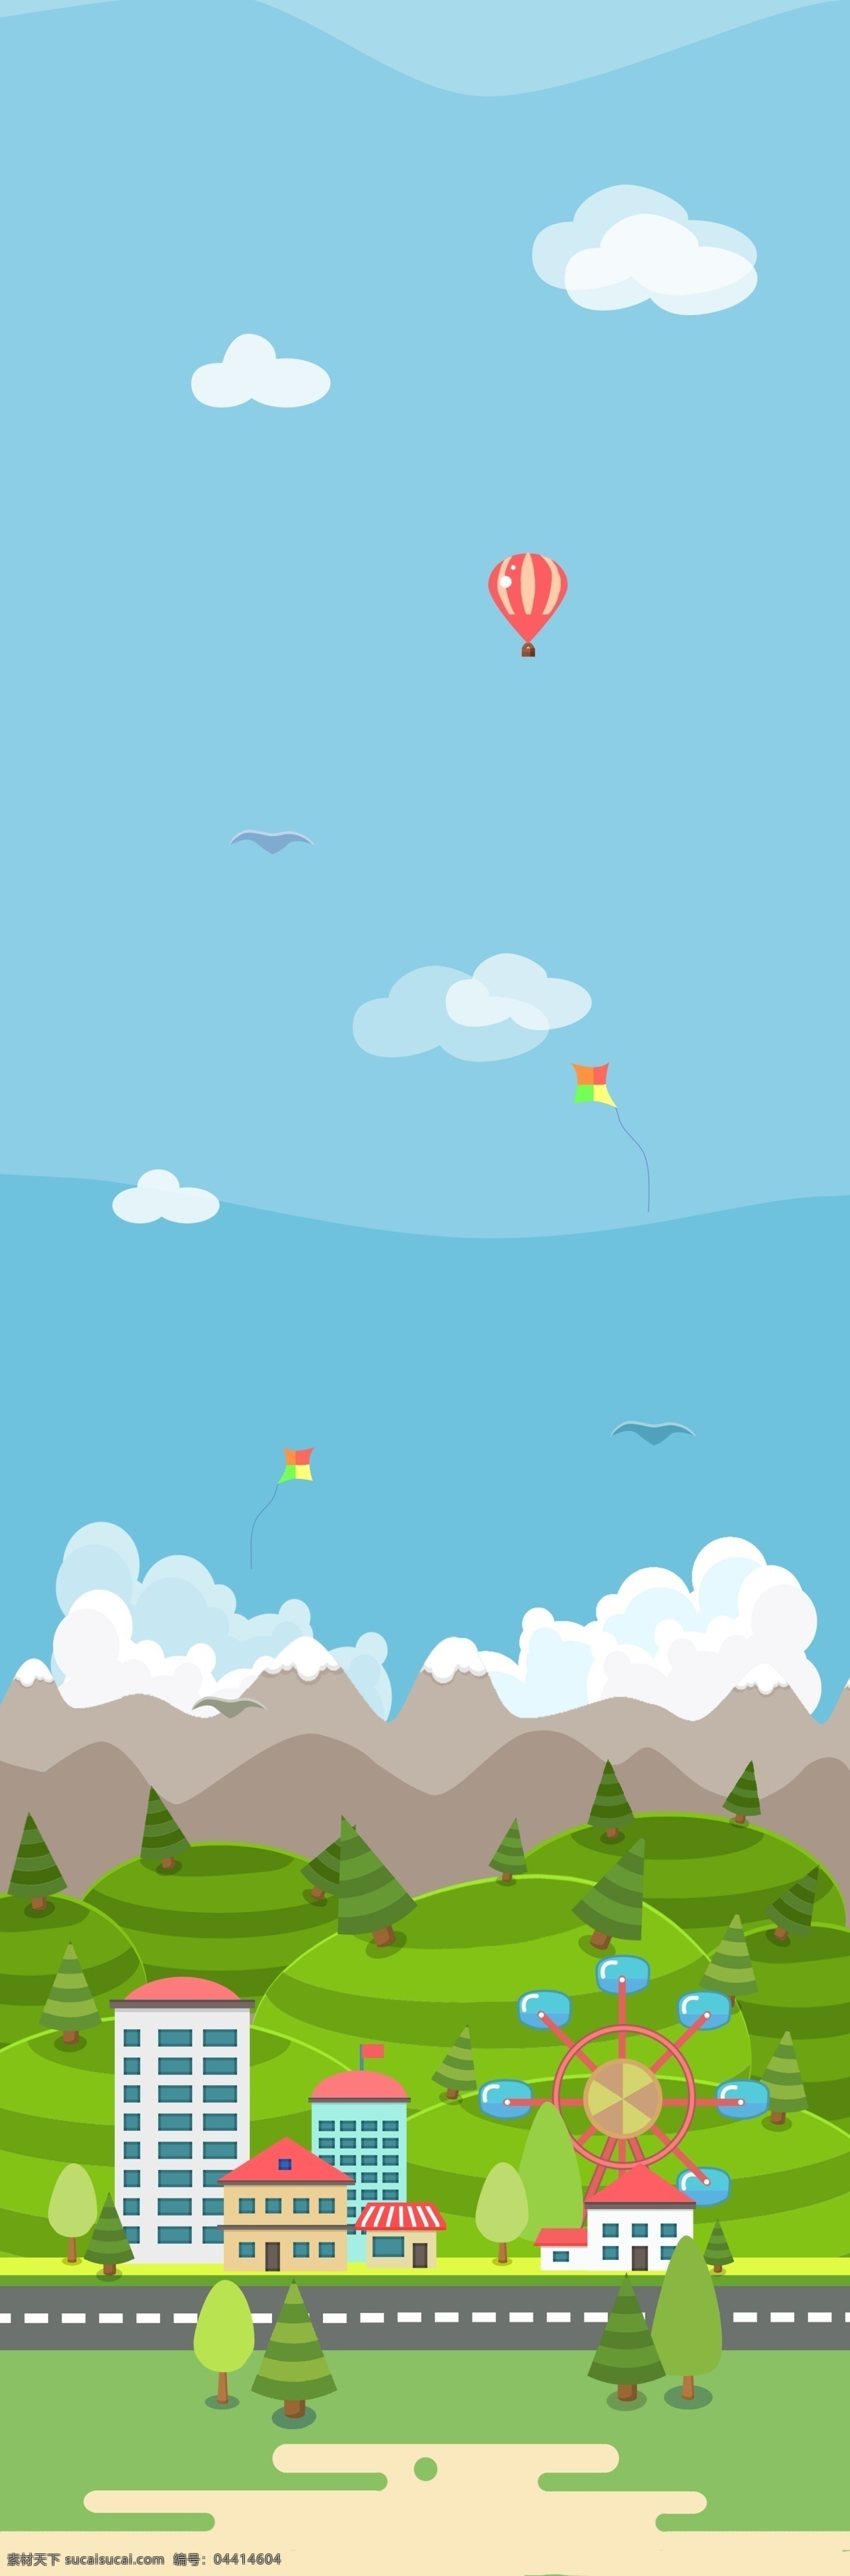 儿童节 蓝色 平面 游戏背景 平面海报设计 蓝天 白云 热气球 游乐园 海鸥 可爱卡通 装饰图案 立体房子